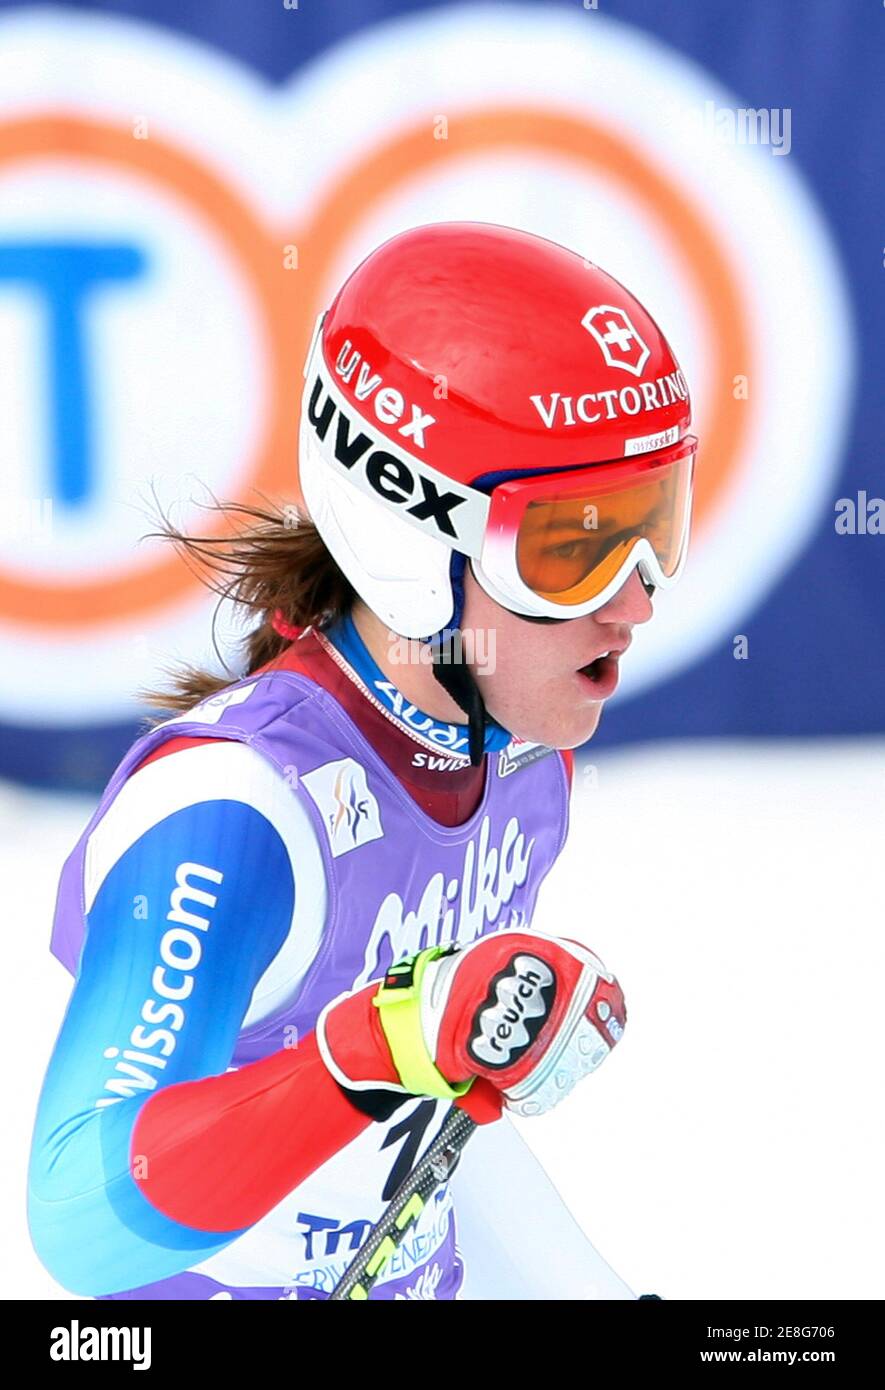 Fabienne Suter Schweiz feiert ihren zweiten Platz im Zielbereich bei der alpinen Ski-WM Frauen Super-G im nördlichen italienischen Skigebiet Tarvisio 22. Februar 2009.  REUTERS/Alessandro Bianchi (Italien) Stockfoto